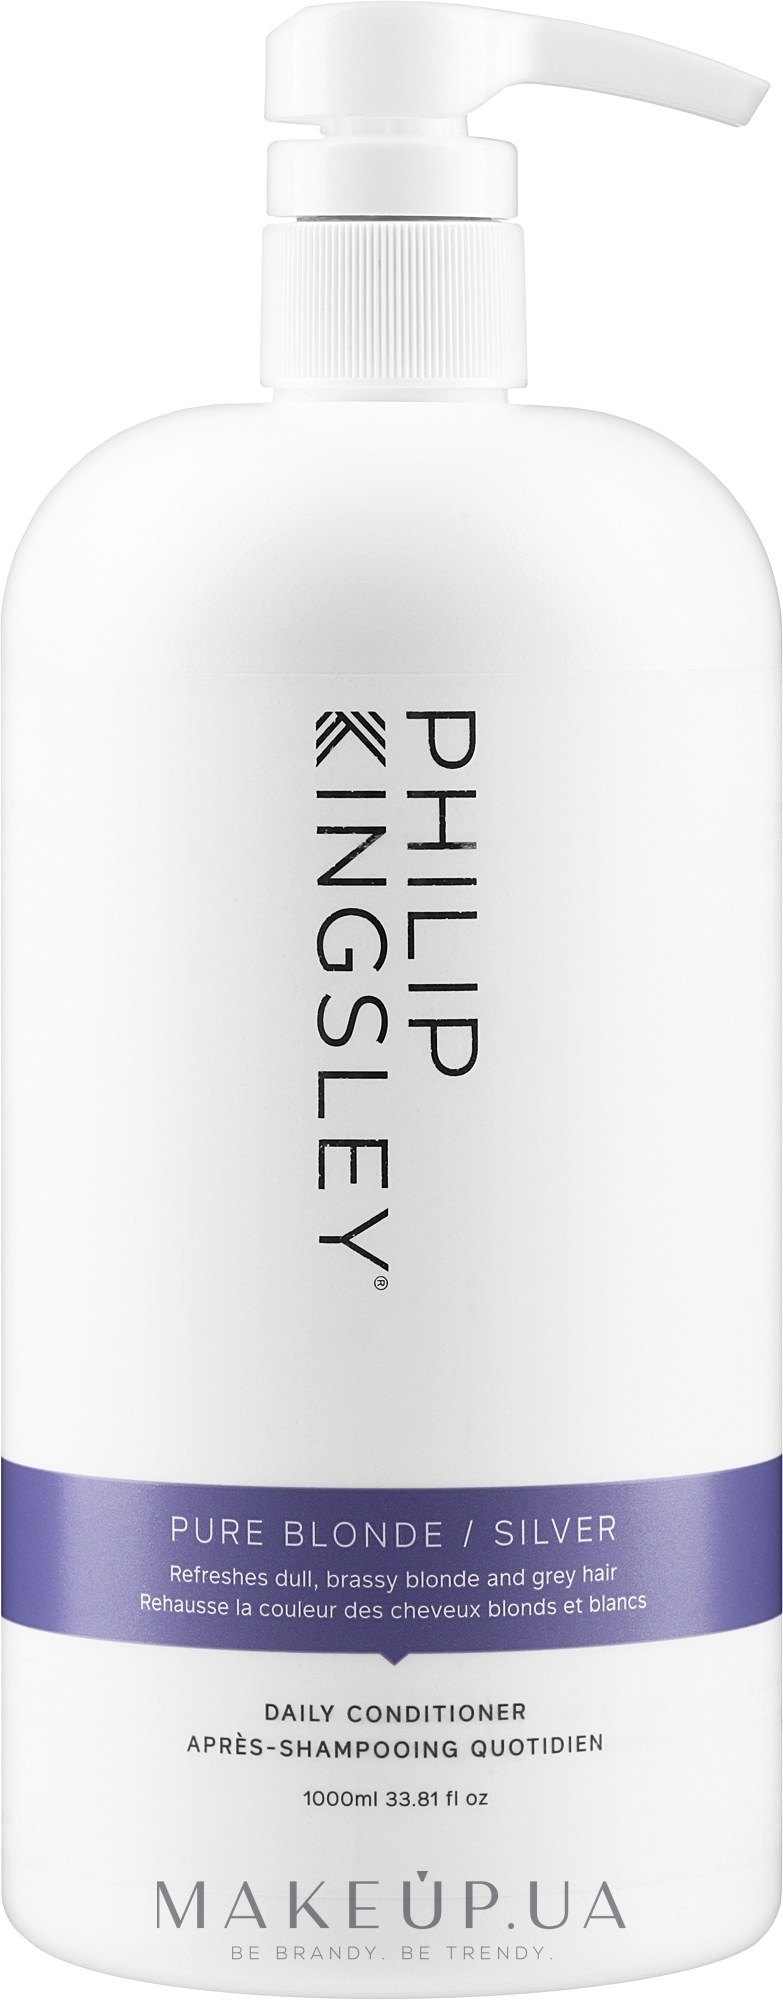 Кондиціонер для світлого волосся холодних відтінків - Philip Kingsley Pure Blonde/ Silver Brightening Daily Conditioner — фото 1000ml